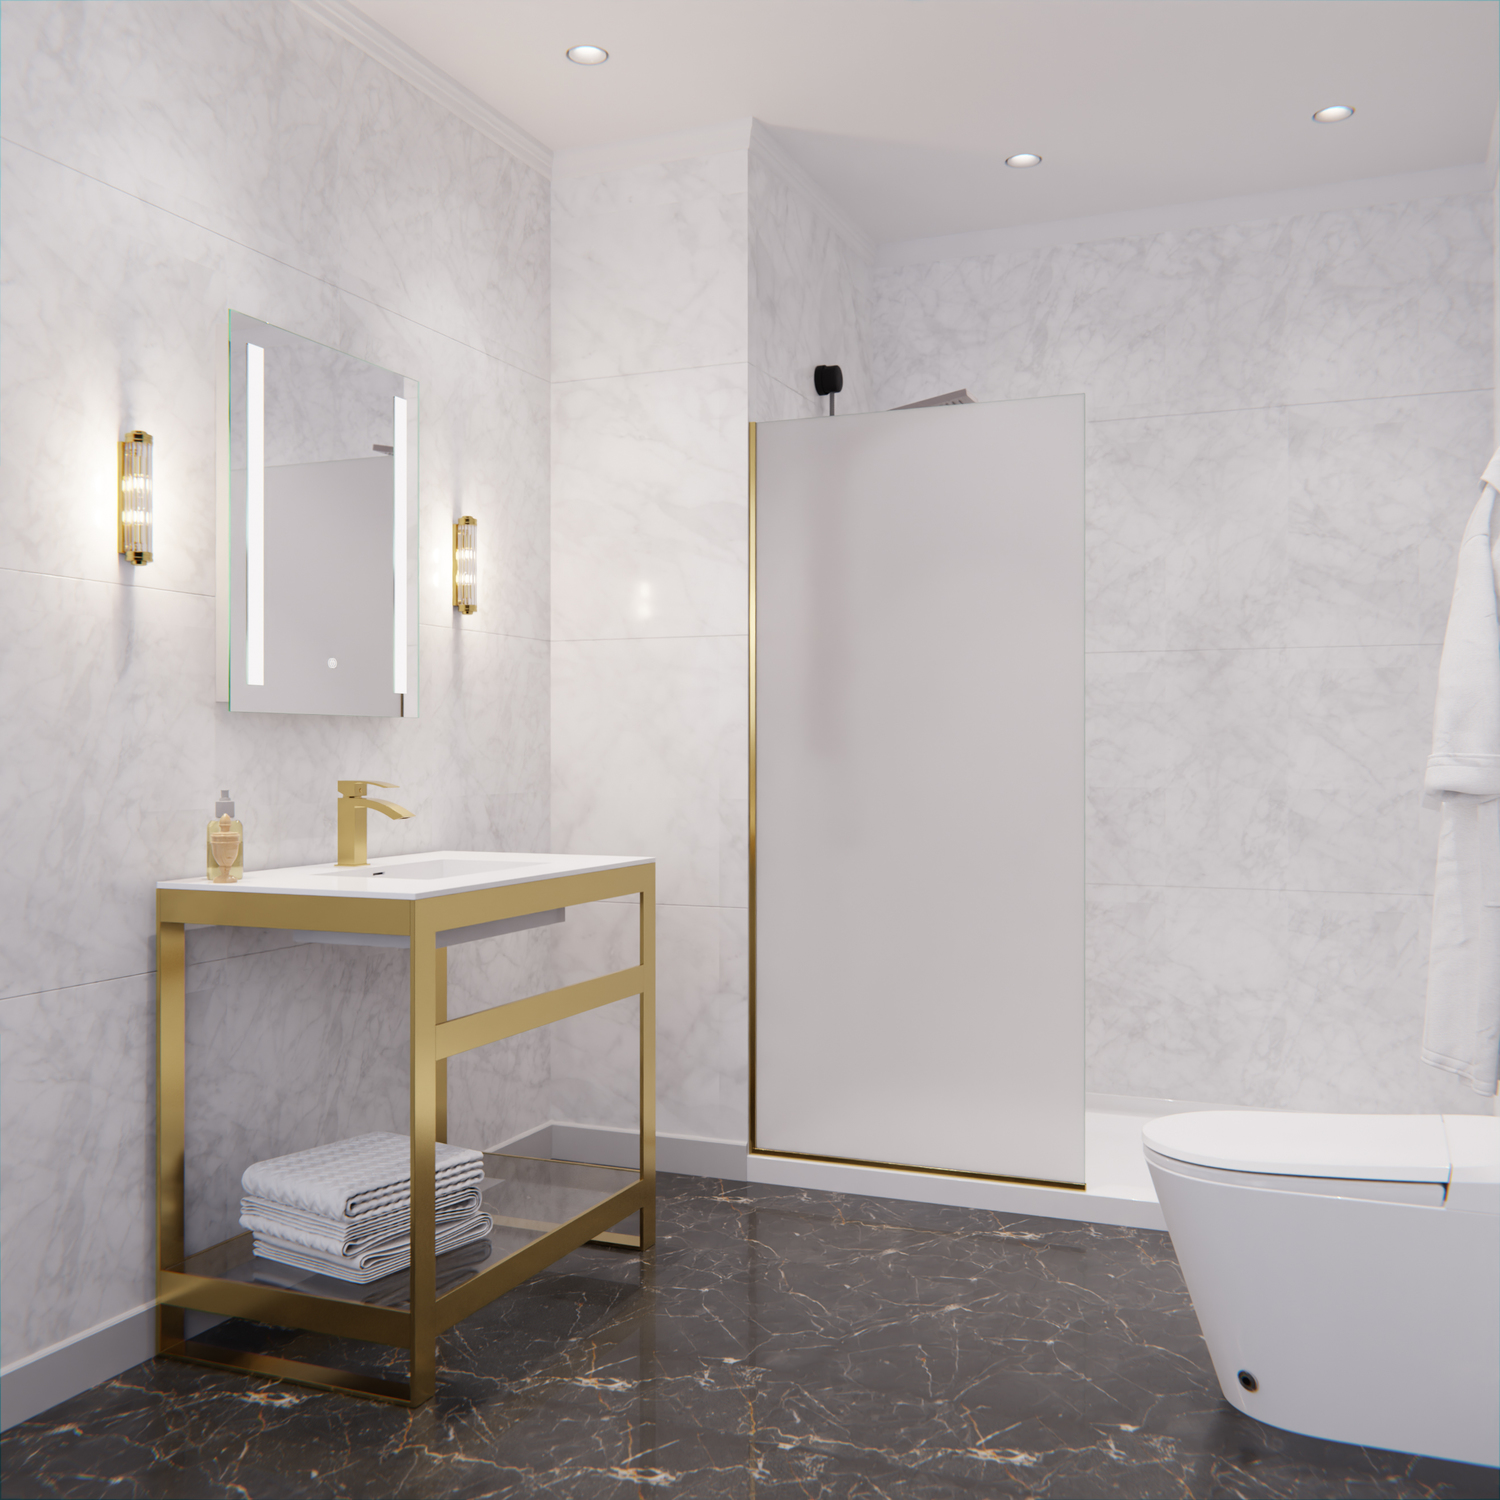 35 x 35 shower base Anzzi SHOWER - Shower Doors - Fixed Gold